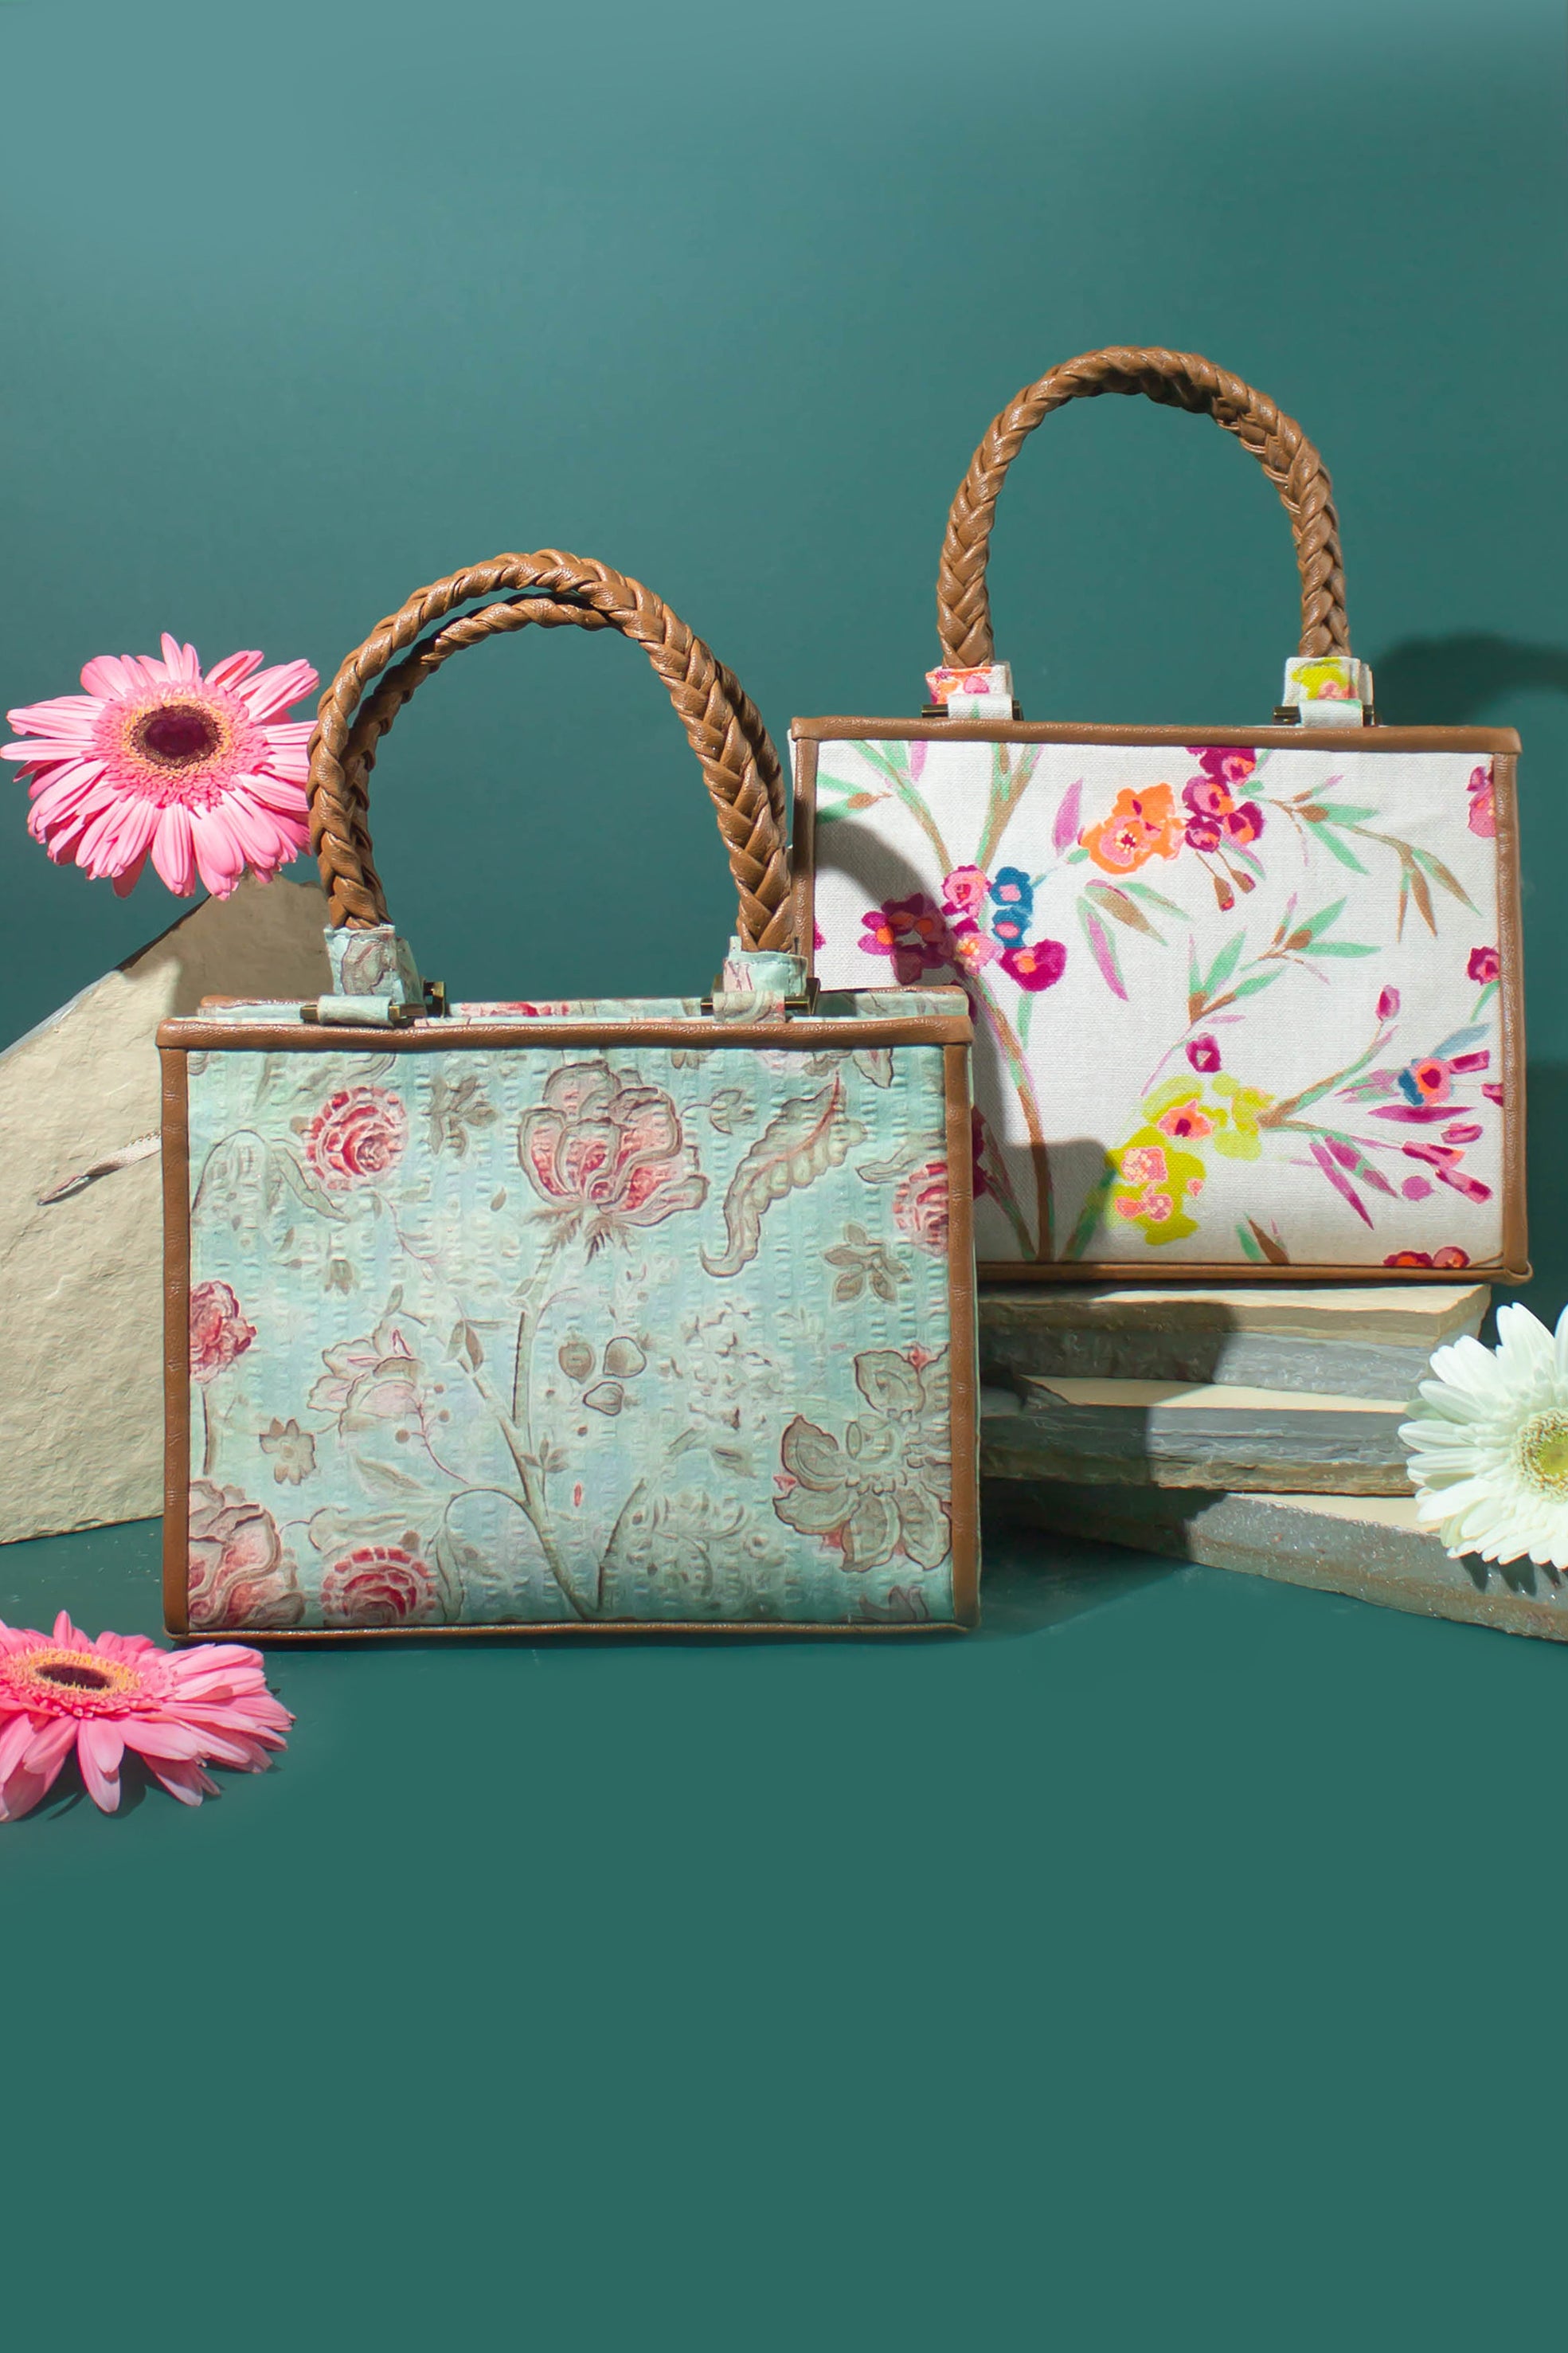 Buy Oriflame Women's Handbag (Multicolor) at Amazon.in